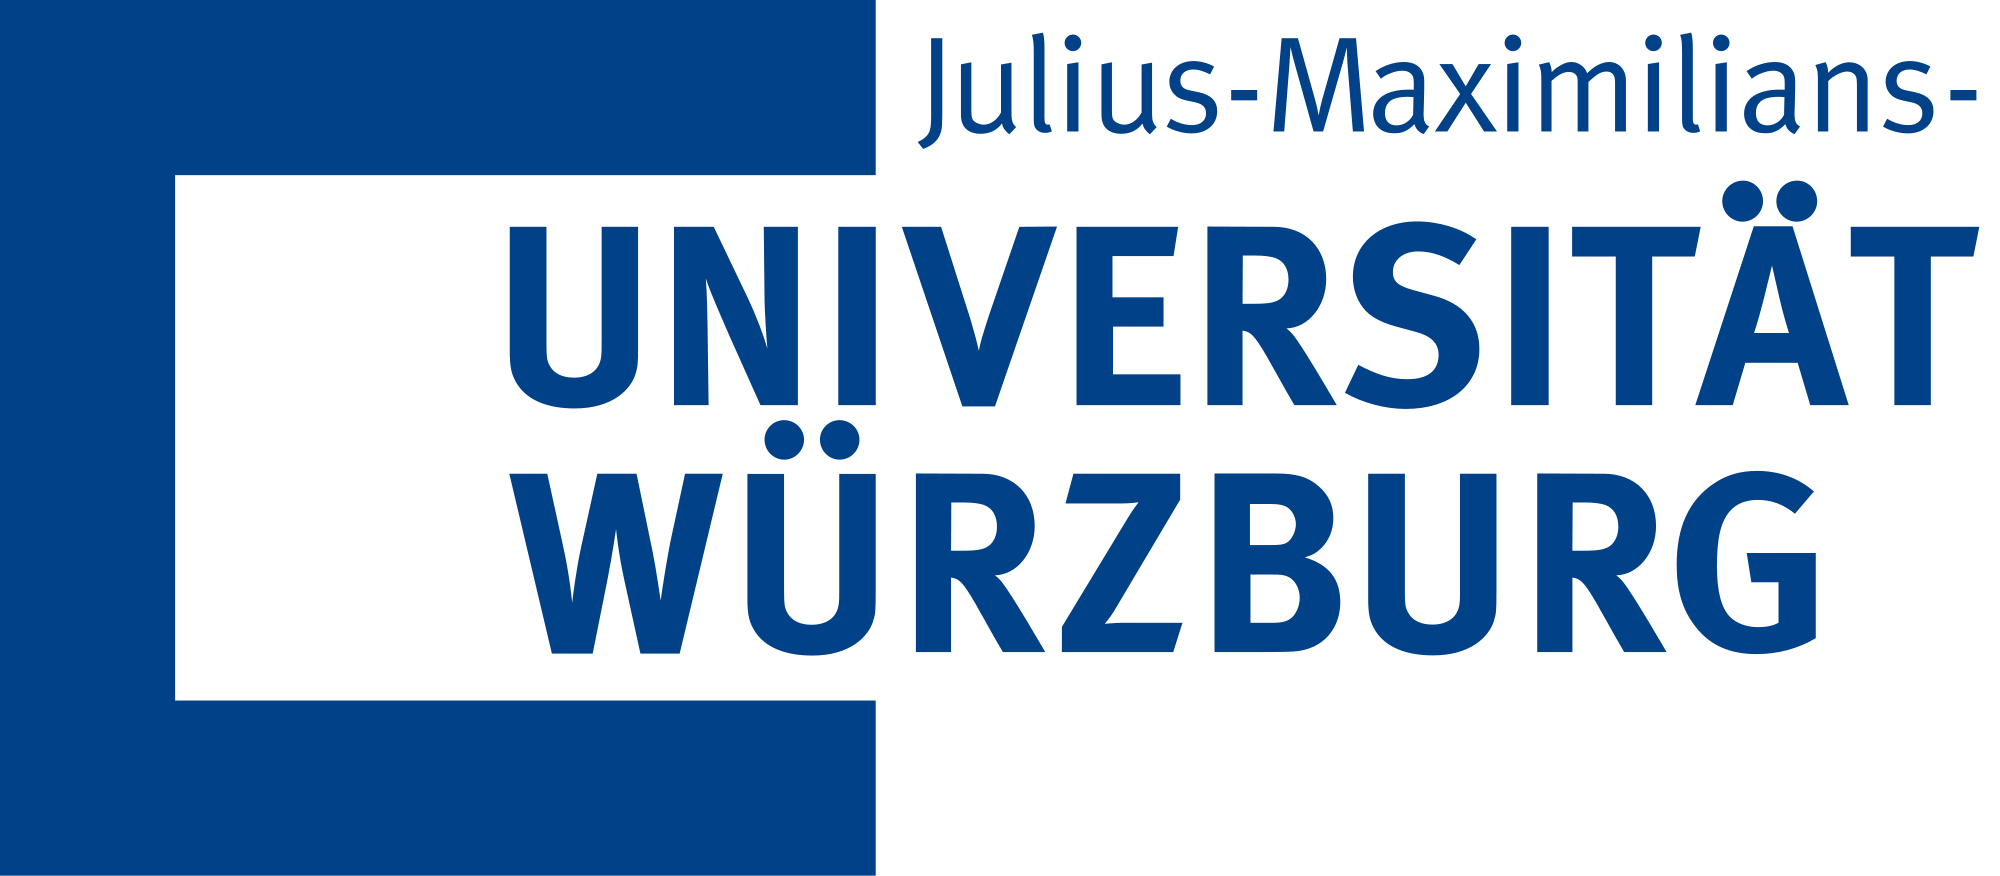 University of Wurzburg